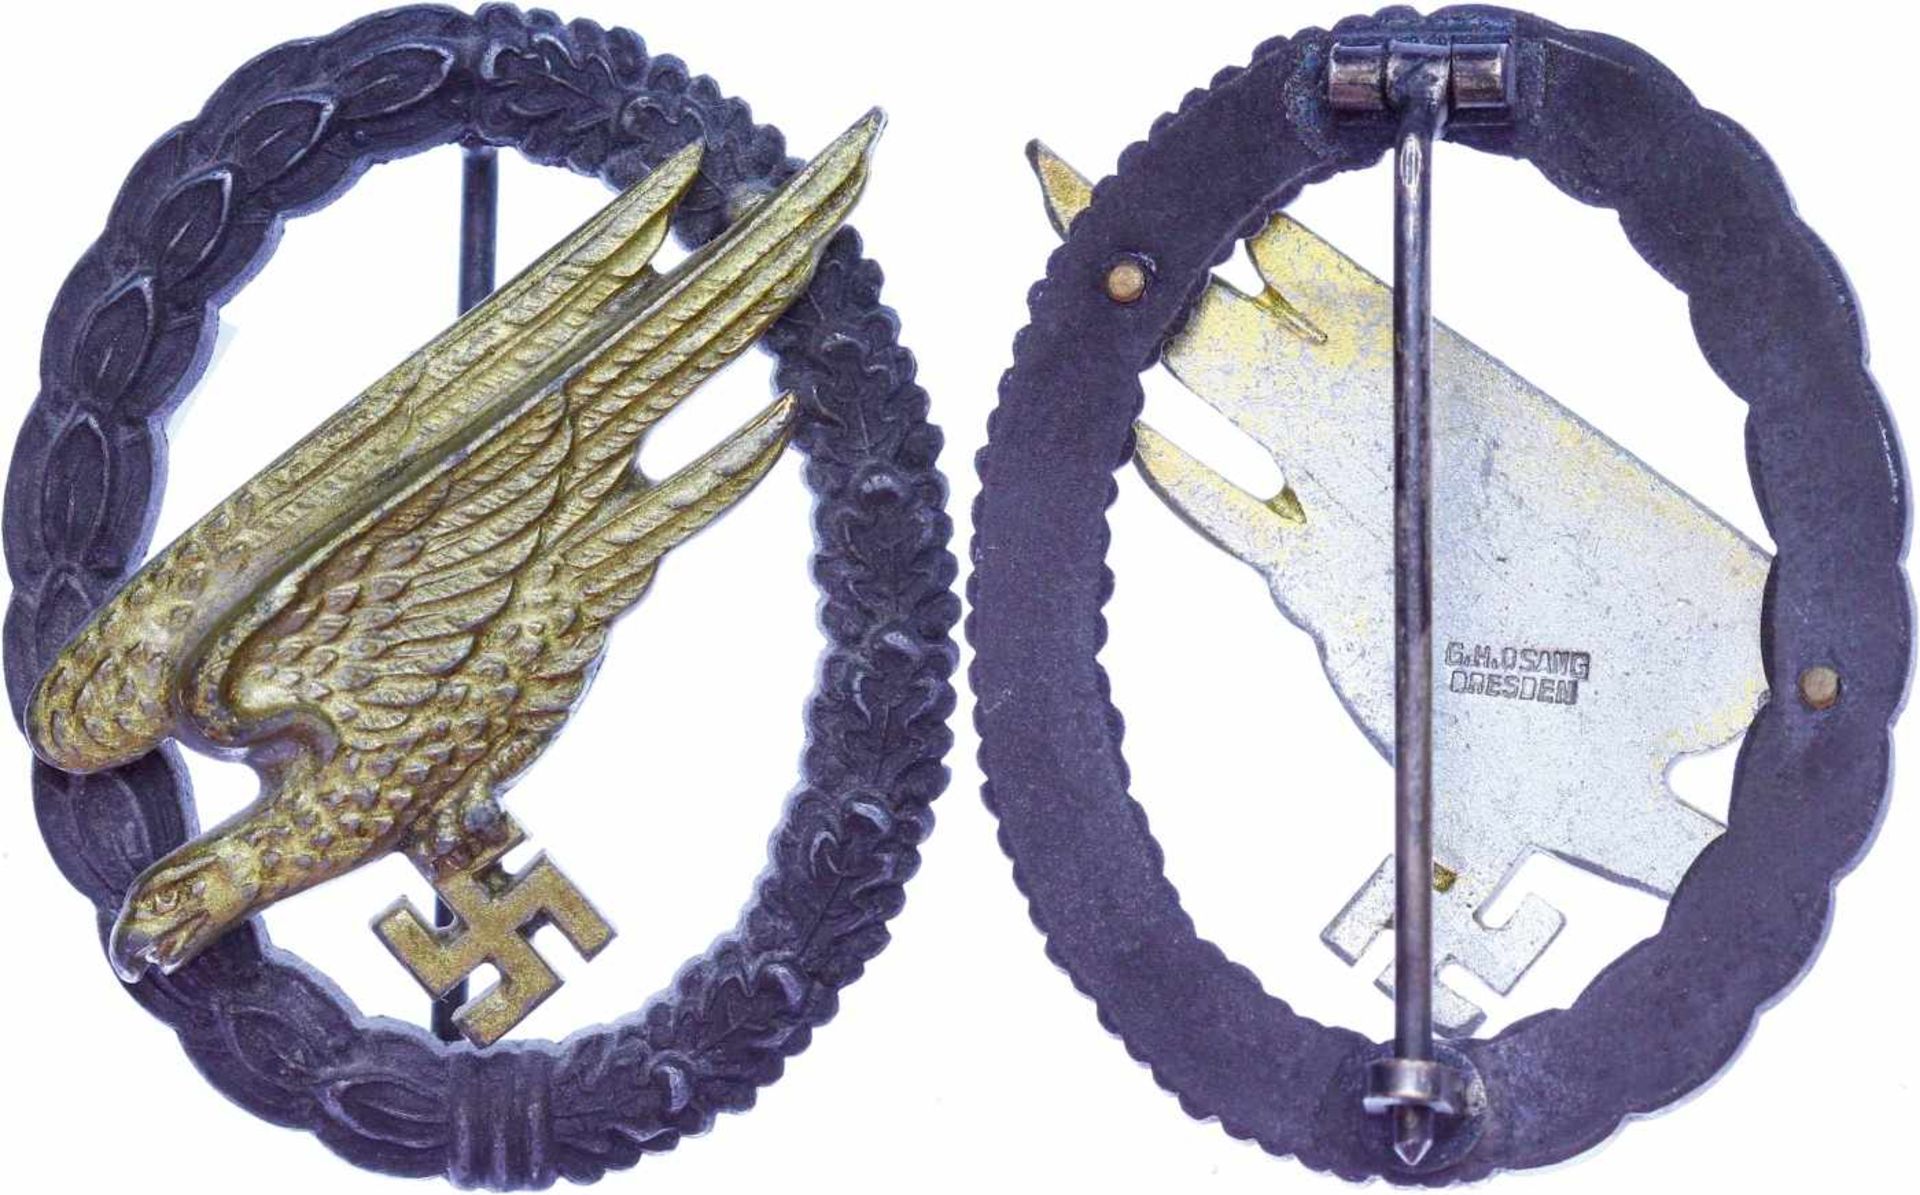 Auszeichnungen Luftwaffe 2. Weltkrieg Fallschirmschützenabzeichen, Feinzink, rückseitig Hersteller "